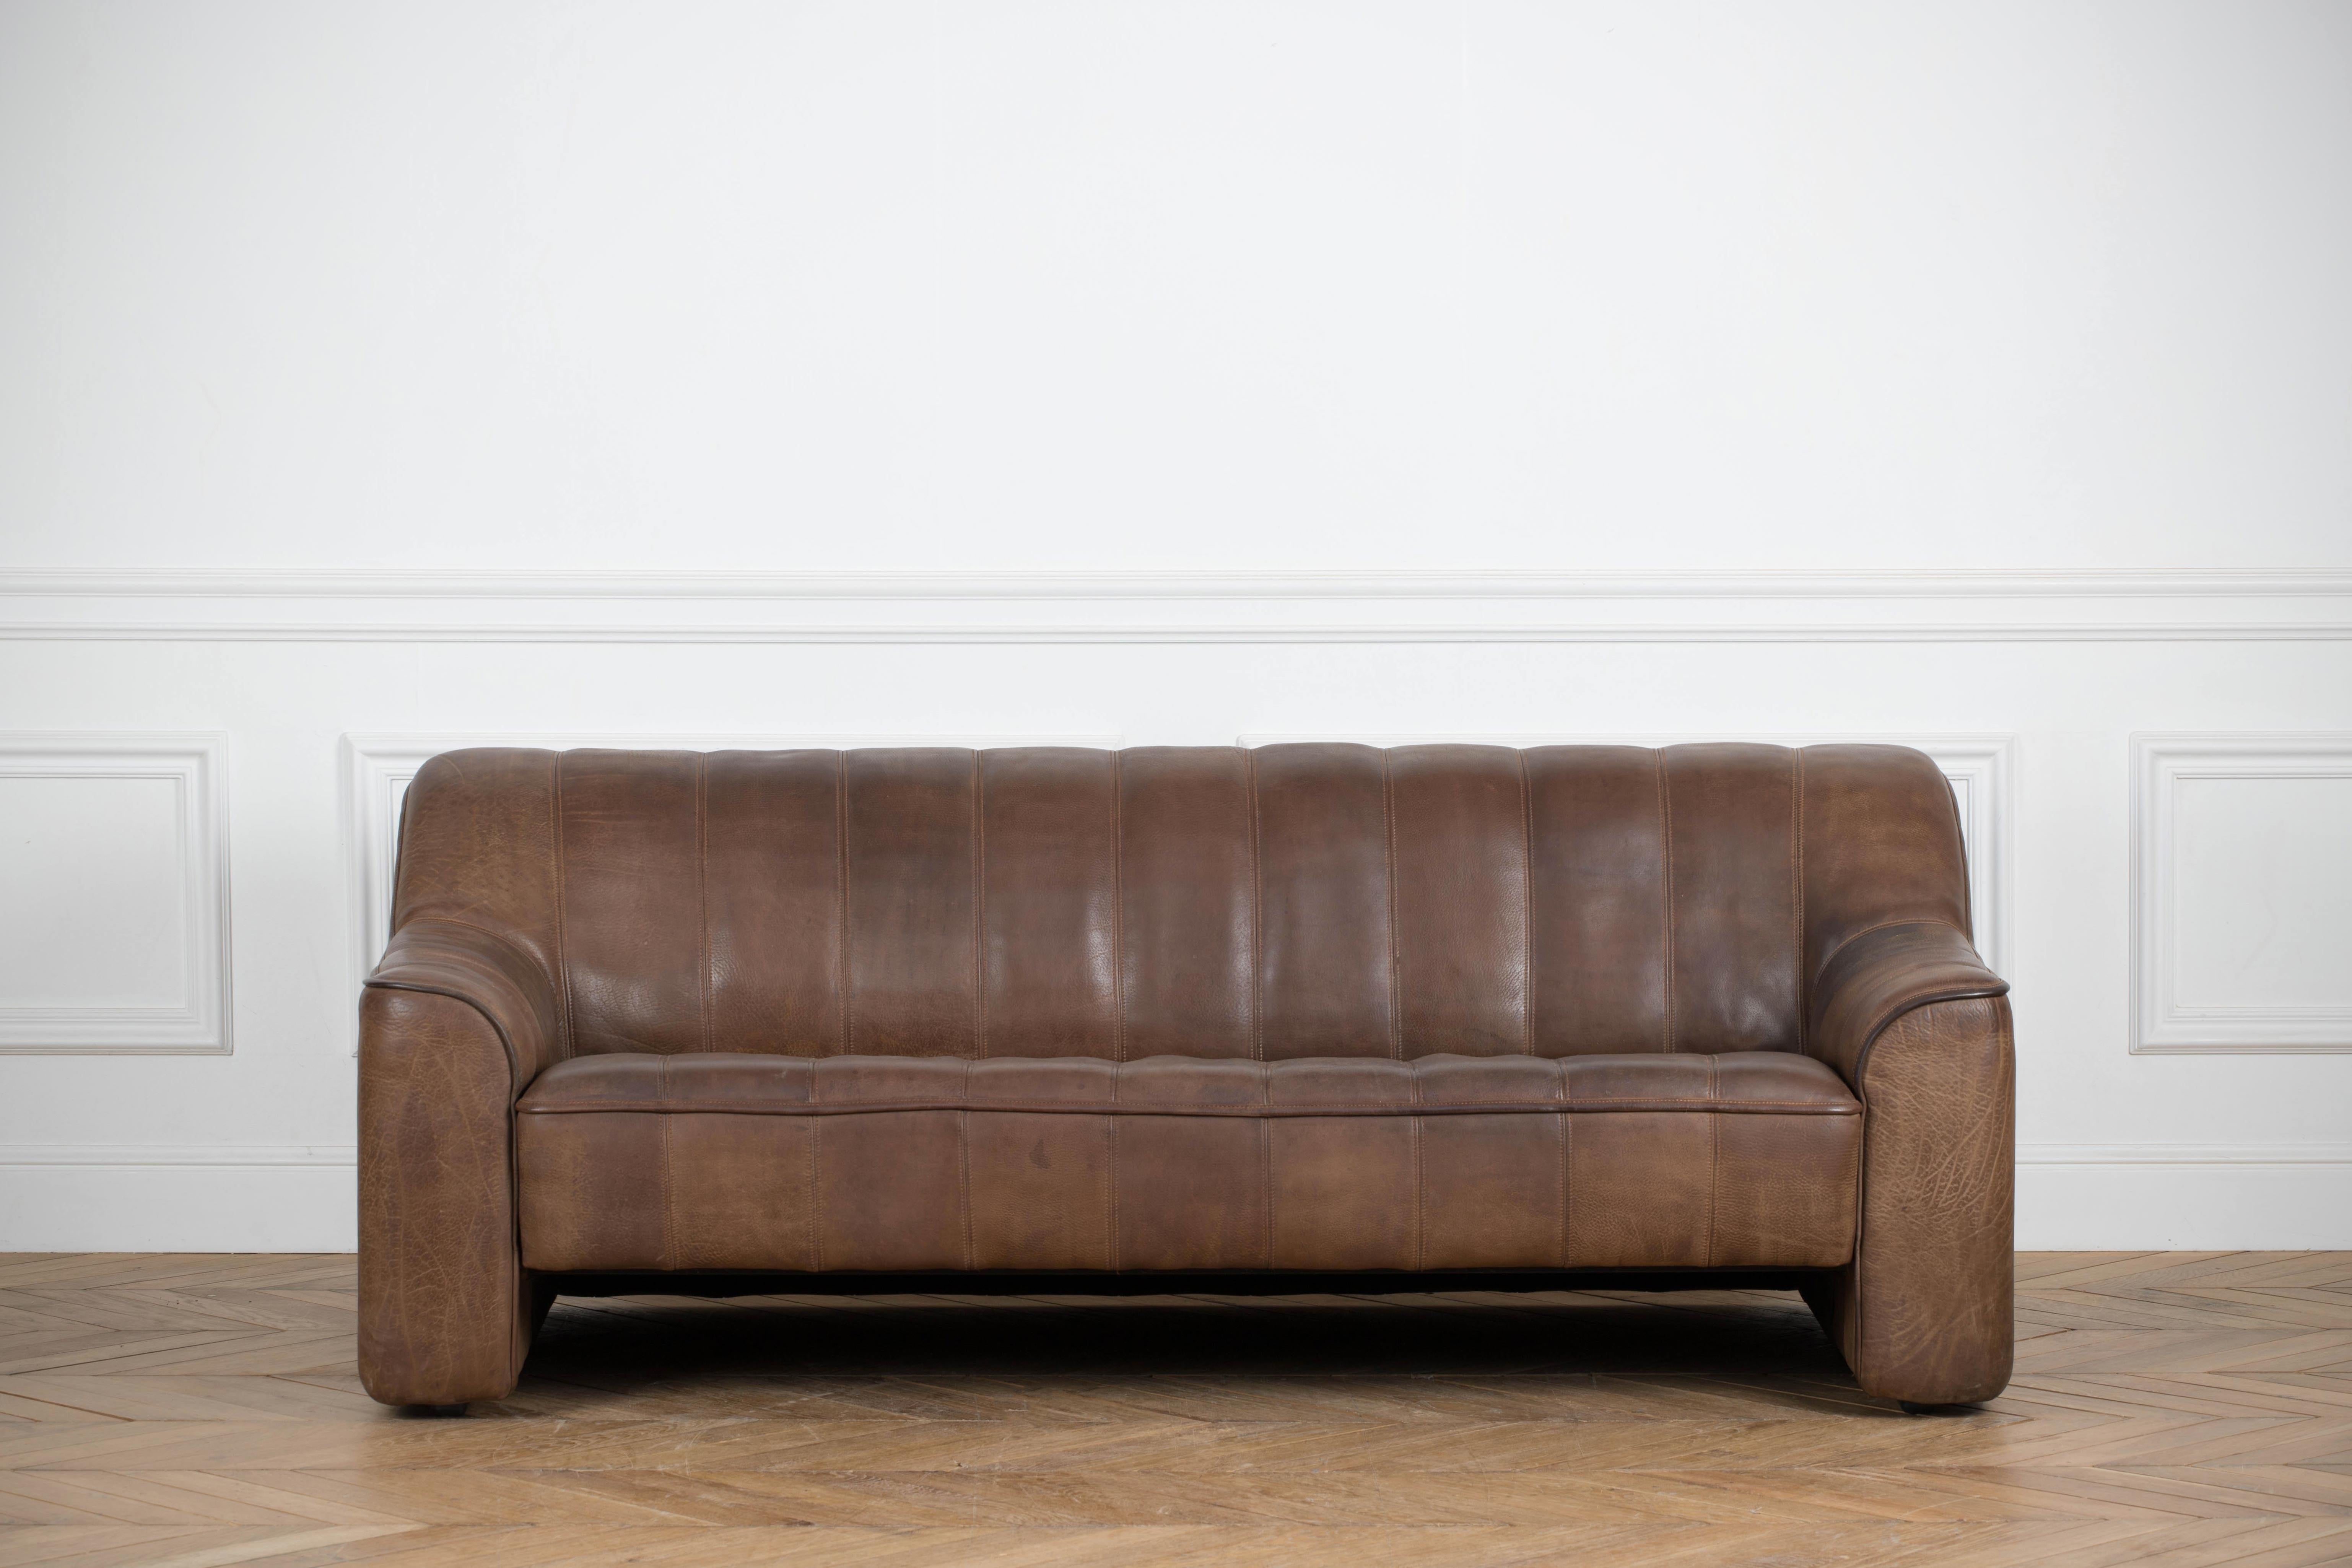 Dieses Sofa, das aus einem Modell DS44 besteht, wurde von De Sede in den 1970er Jahren in der Schweiz hergestellt.
Gepolstert mit Büffelleder in Cognac.
Diese komfortablen DS44-Sofas bieten eine ausziehbare Sitzfläche (ausziehbar von 57 bis 72